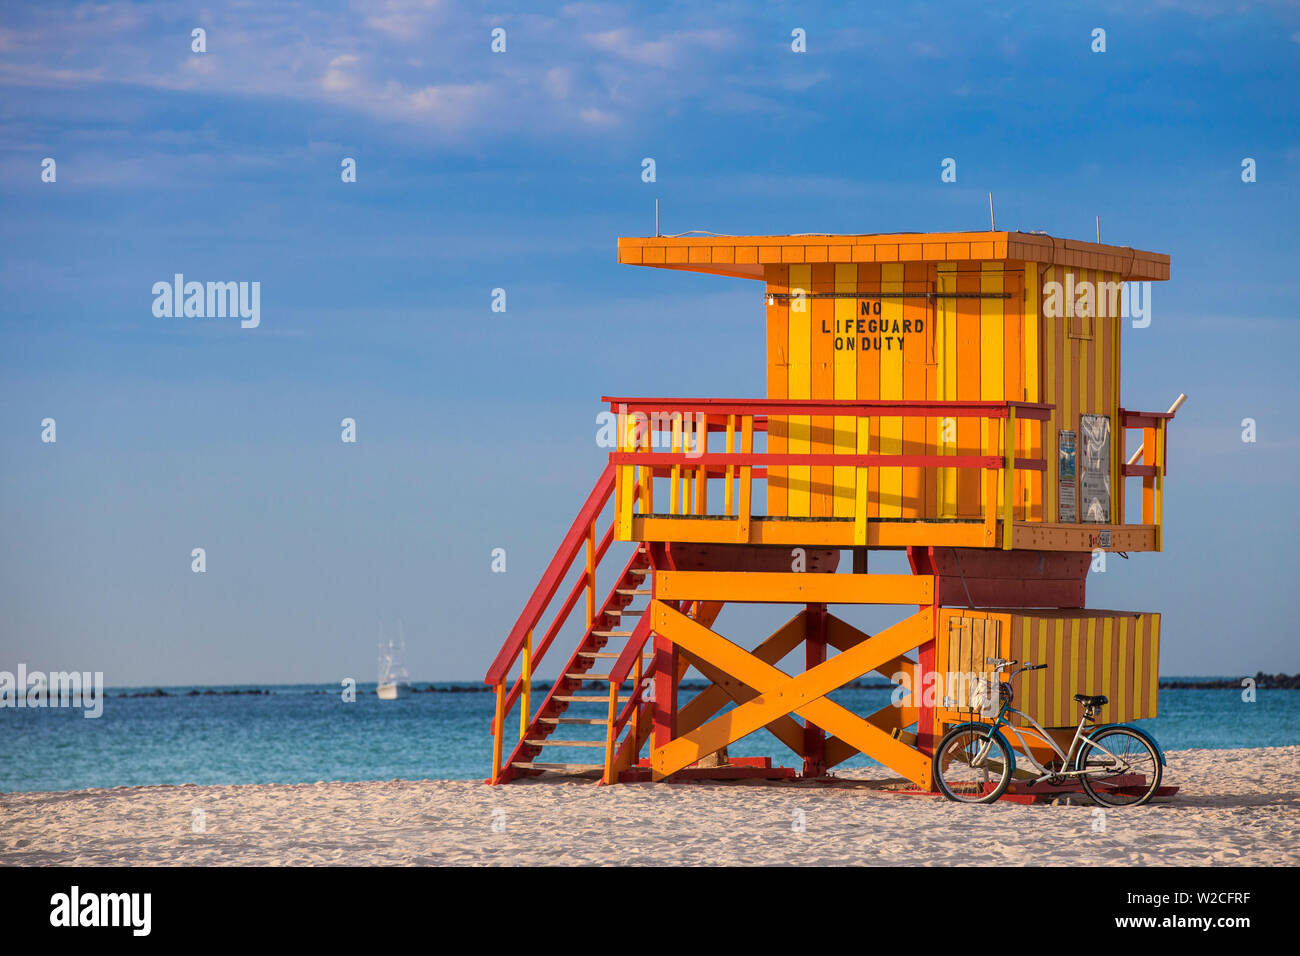 U.S.A, Miami, Miami beach, South Beach, Bike leaning against Life guard beach hut Stock Photo